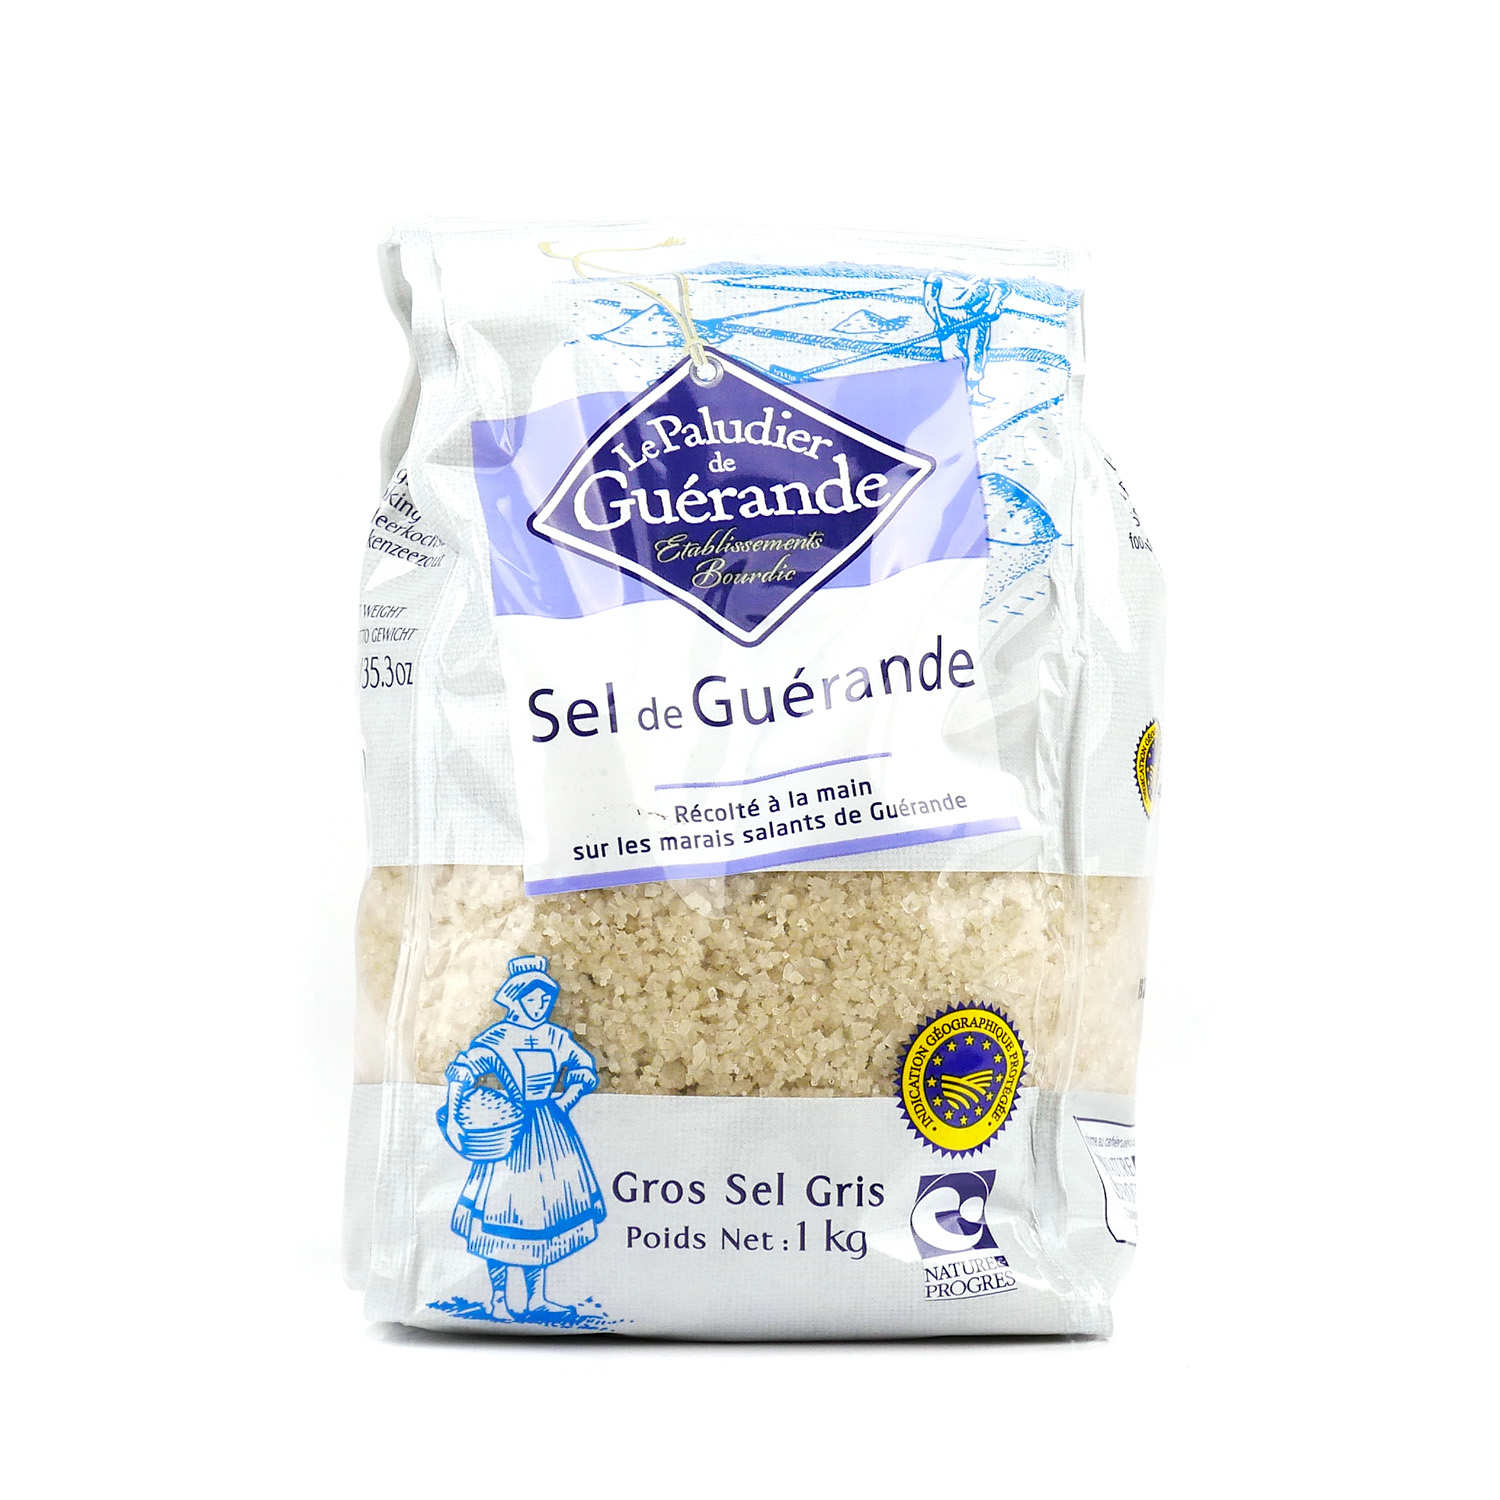 Sel de Guérande au paprika fou — Artisans du sel